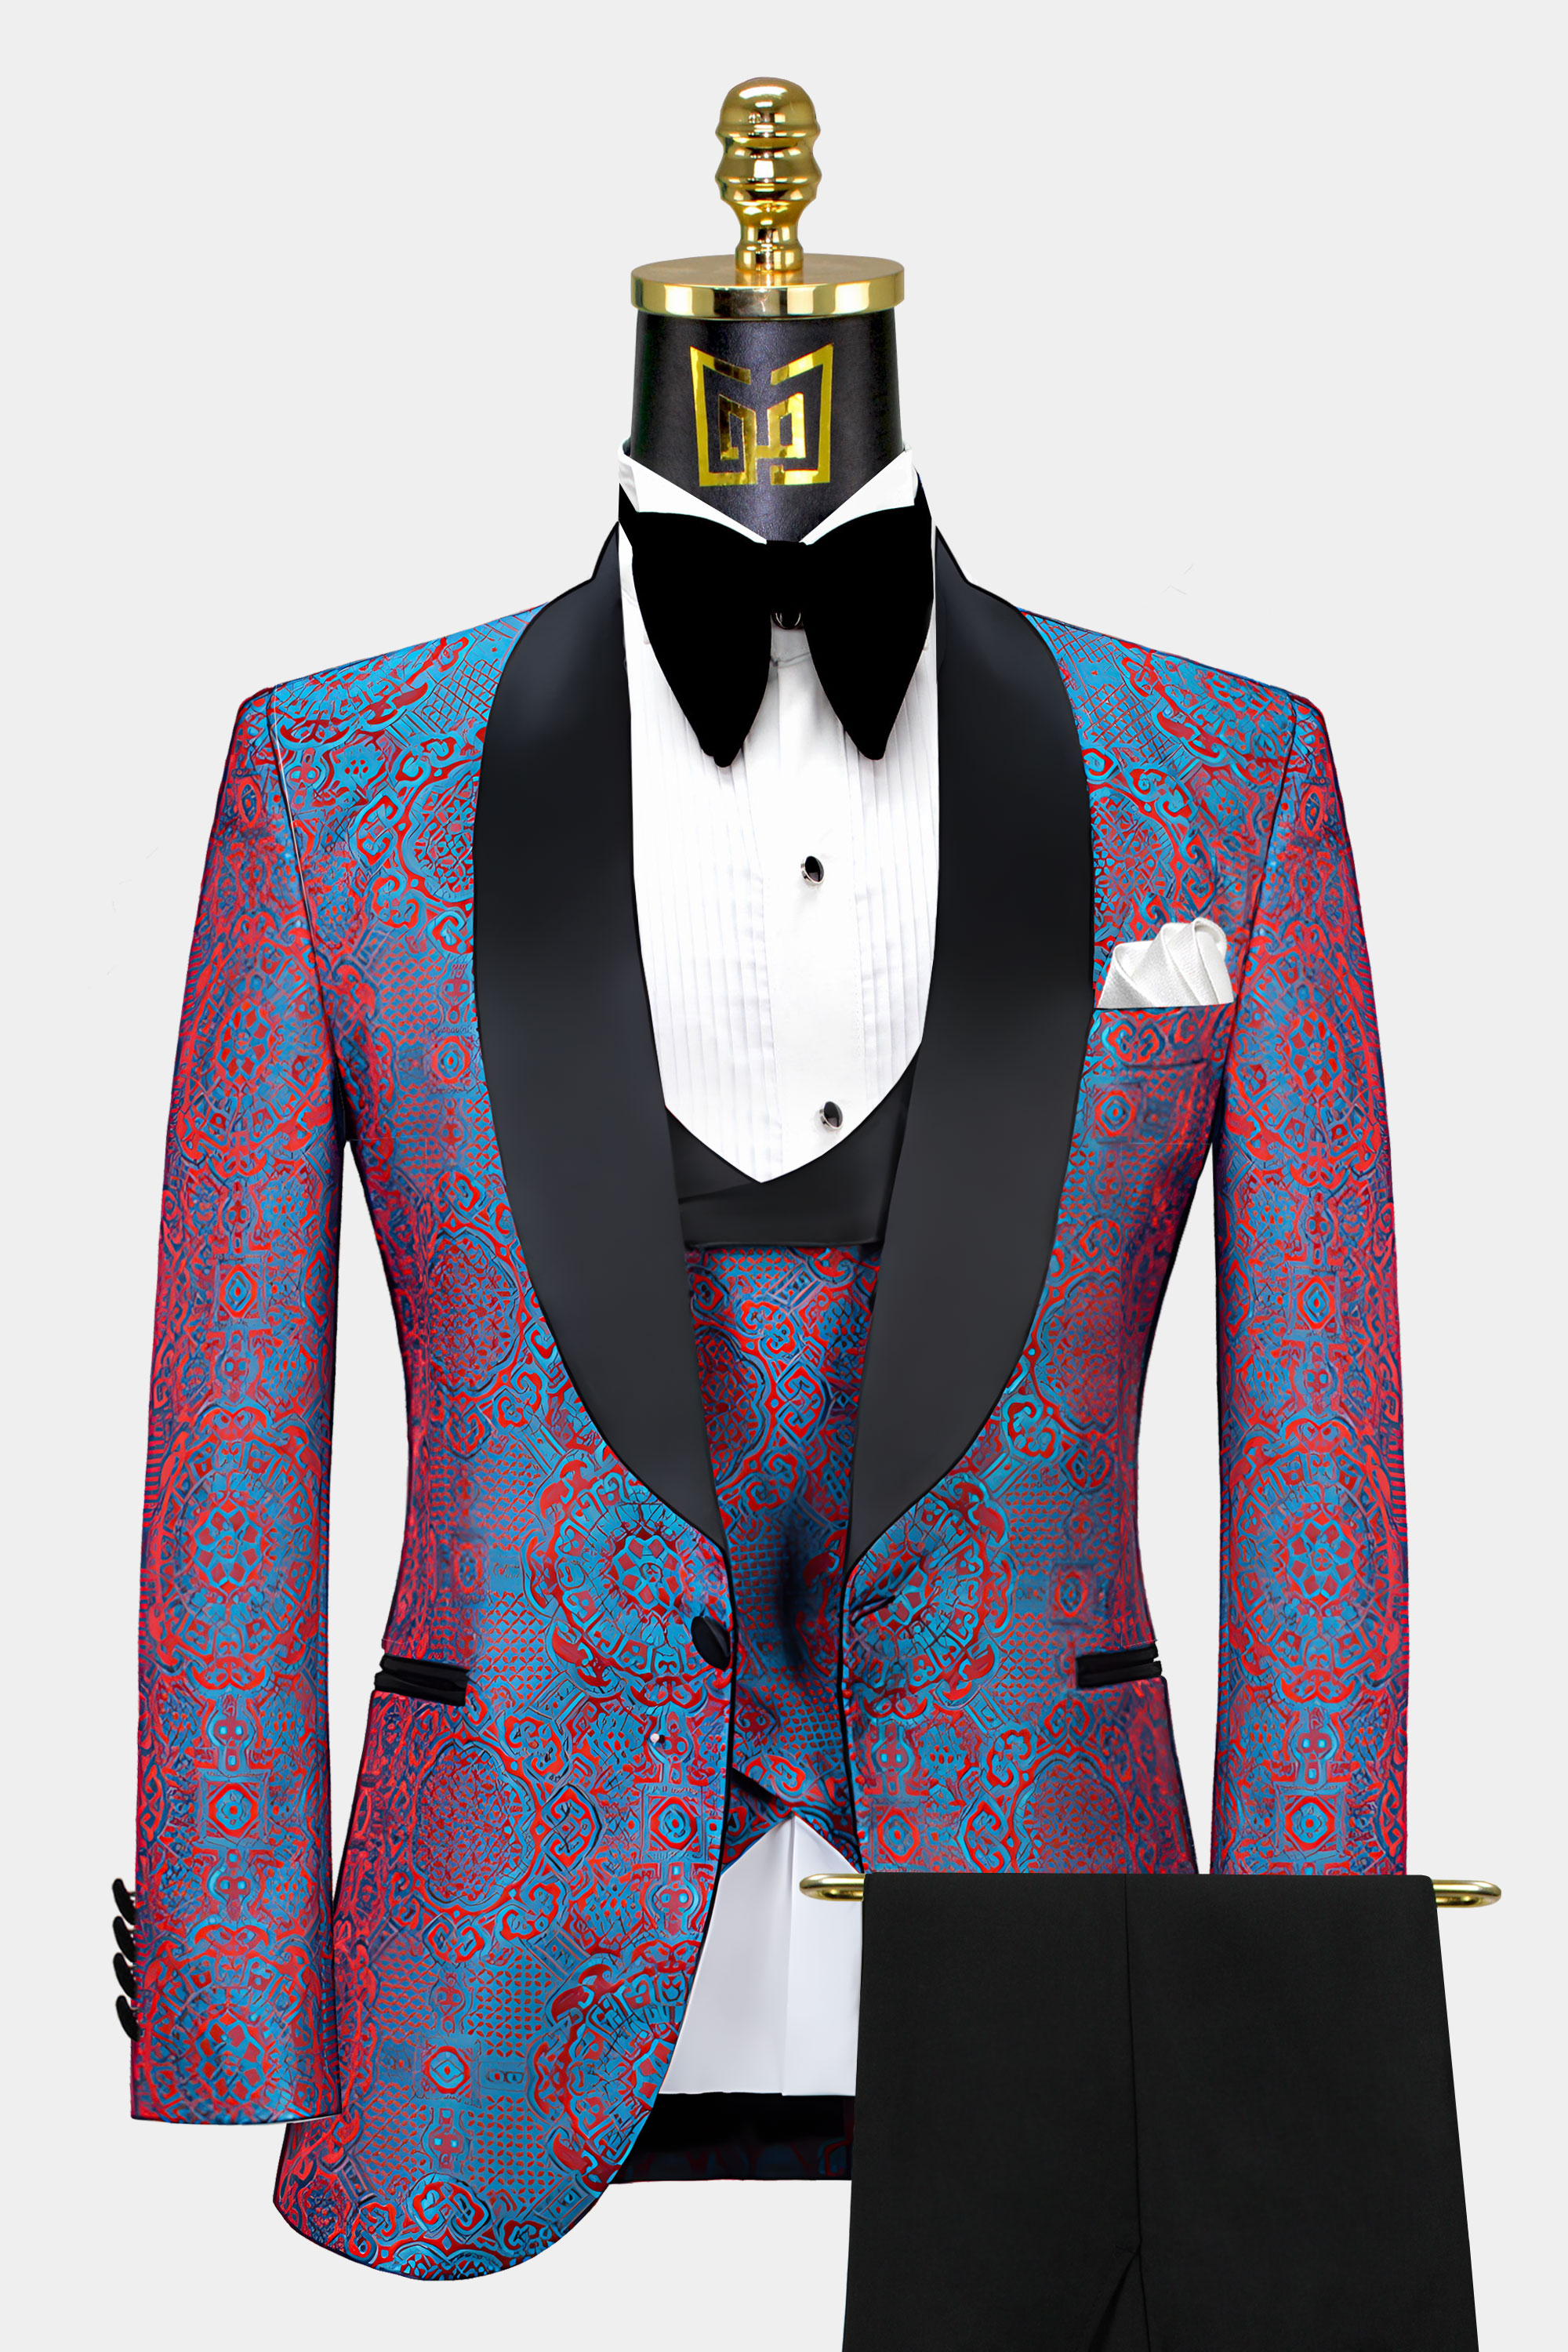 Blue-and-Red-Tuxedo-Prom-Groom-Wedding-Suit-for-Men-from-Gentlemansguru.com